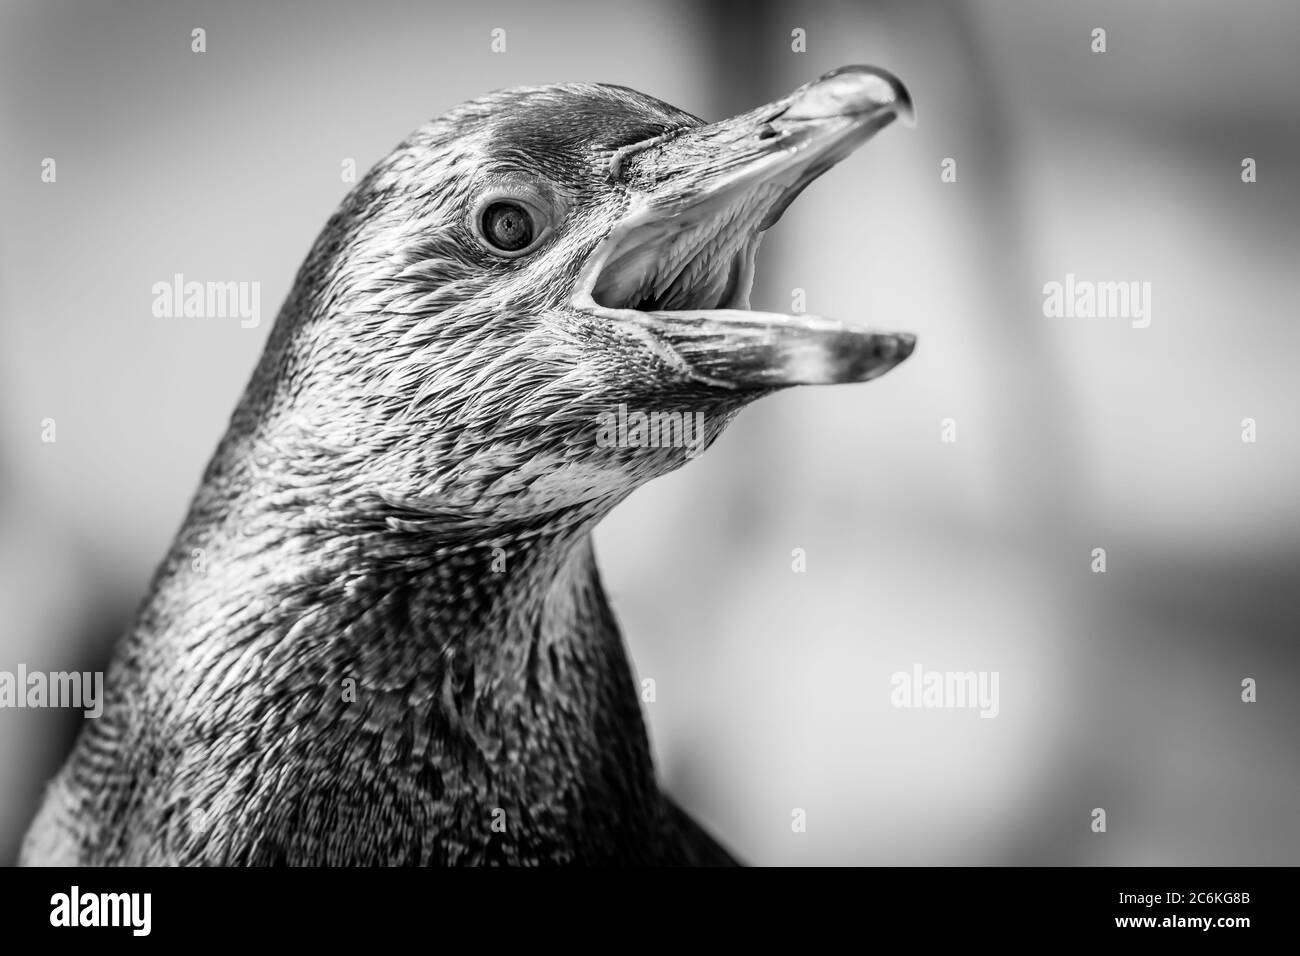 Monochrome Nahaufnahme eines südamerikanischen Humboldt-Pinguins (Spheniscus humboldti), der mit weit geöffnetem Schnabel quiegt und im Inneren Details des Mundes zeigt. Stockfoto